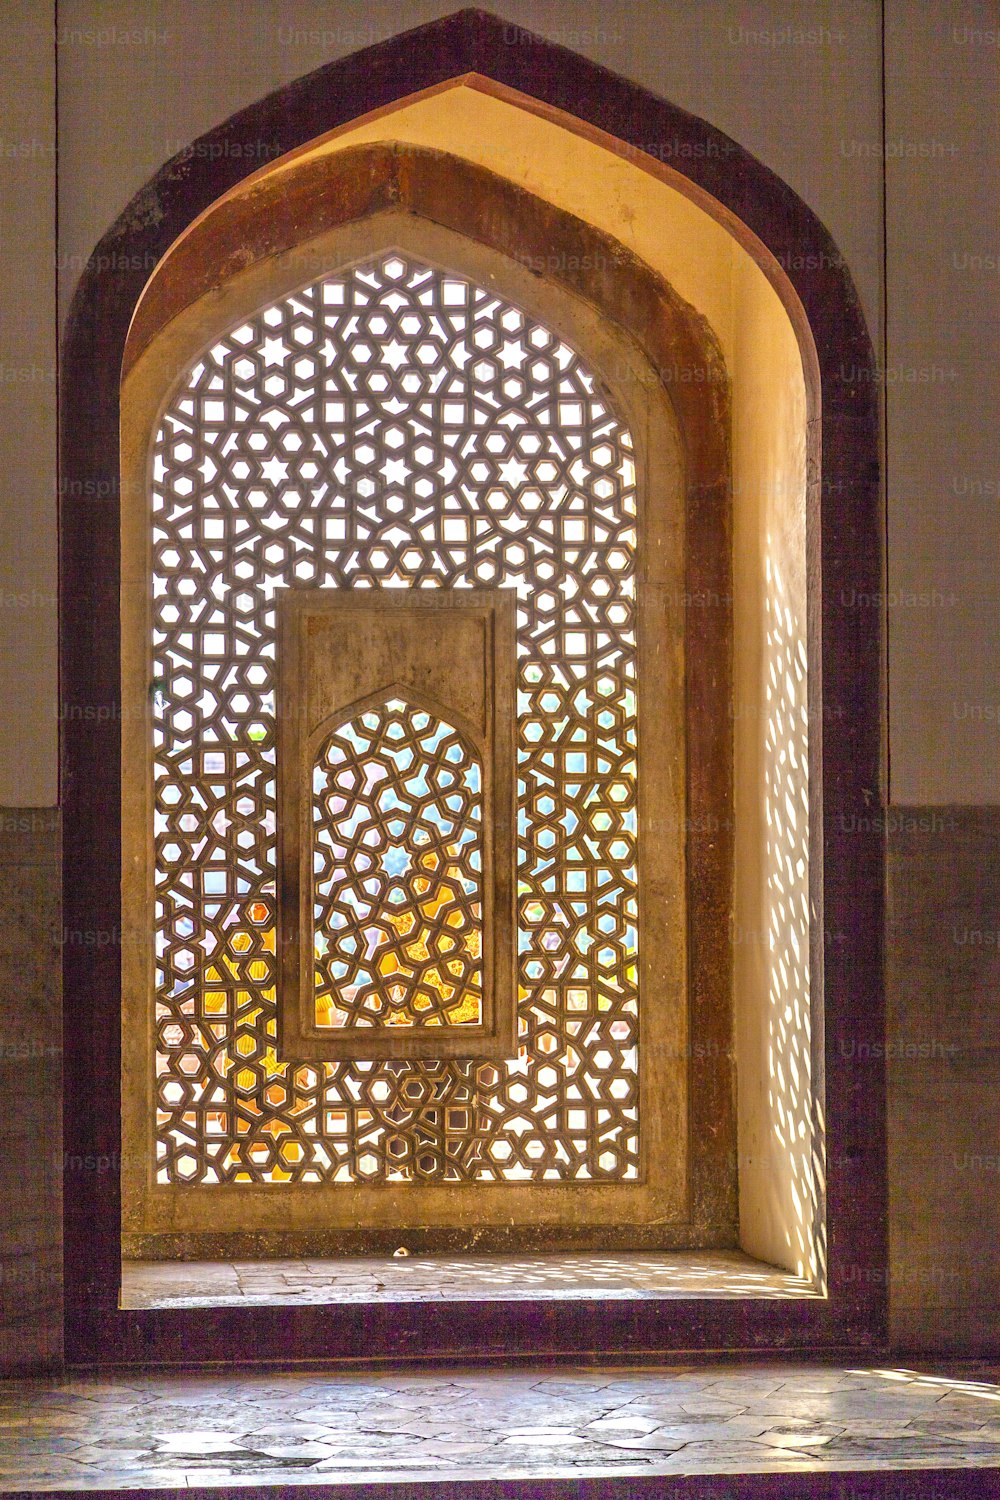 Schöne Fenster mit Ornamenten im islamischen Stil am Grab von Humayuns